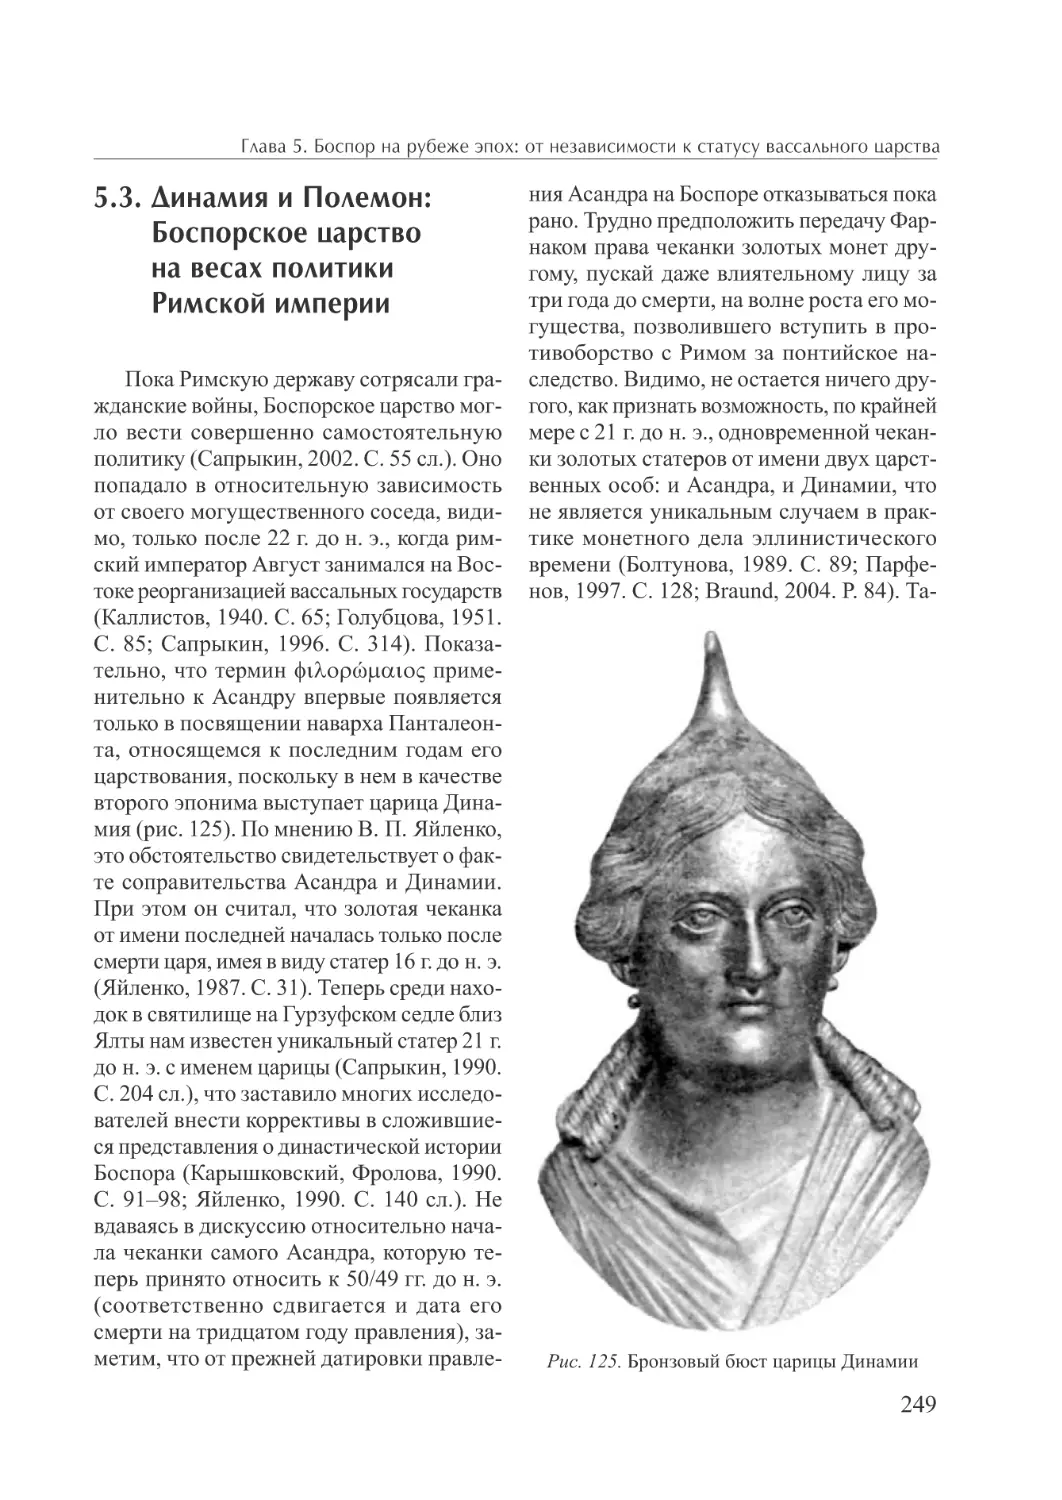 5.2. Динамия и Полемон: Боспорское царство на весах политики Римской империи